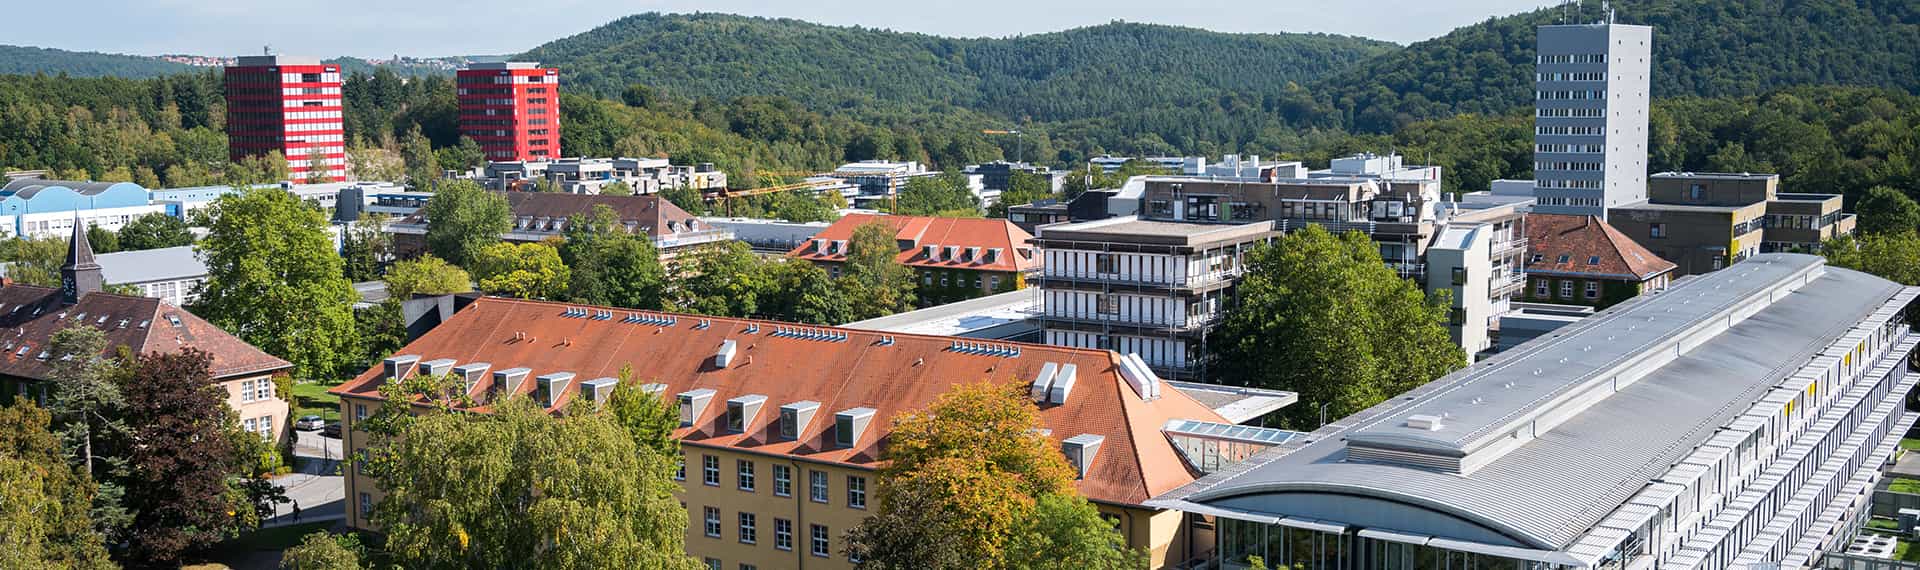 Campus der Universität des Saarlandes